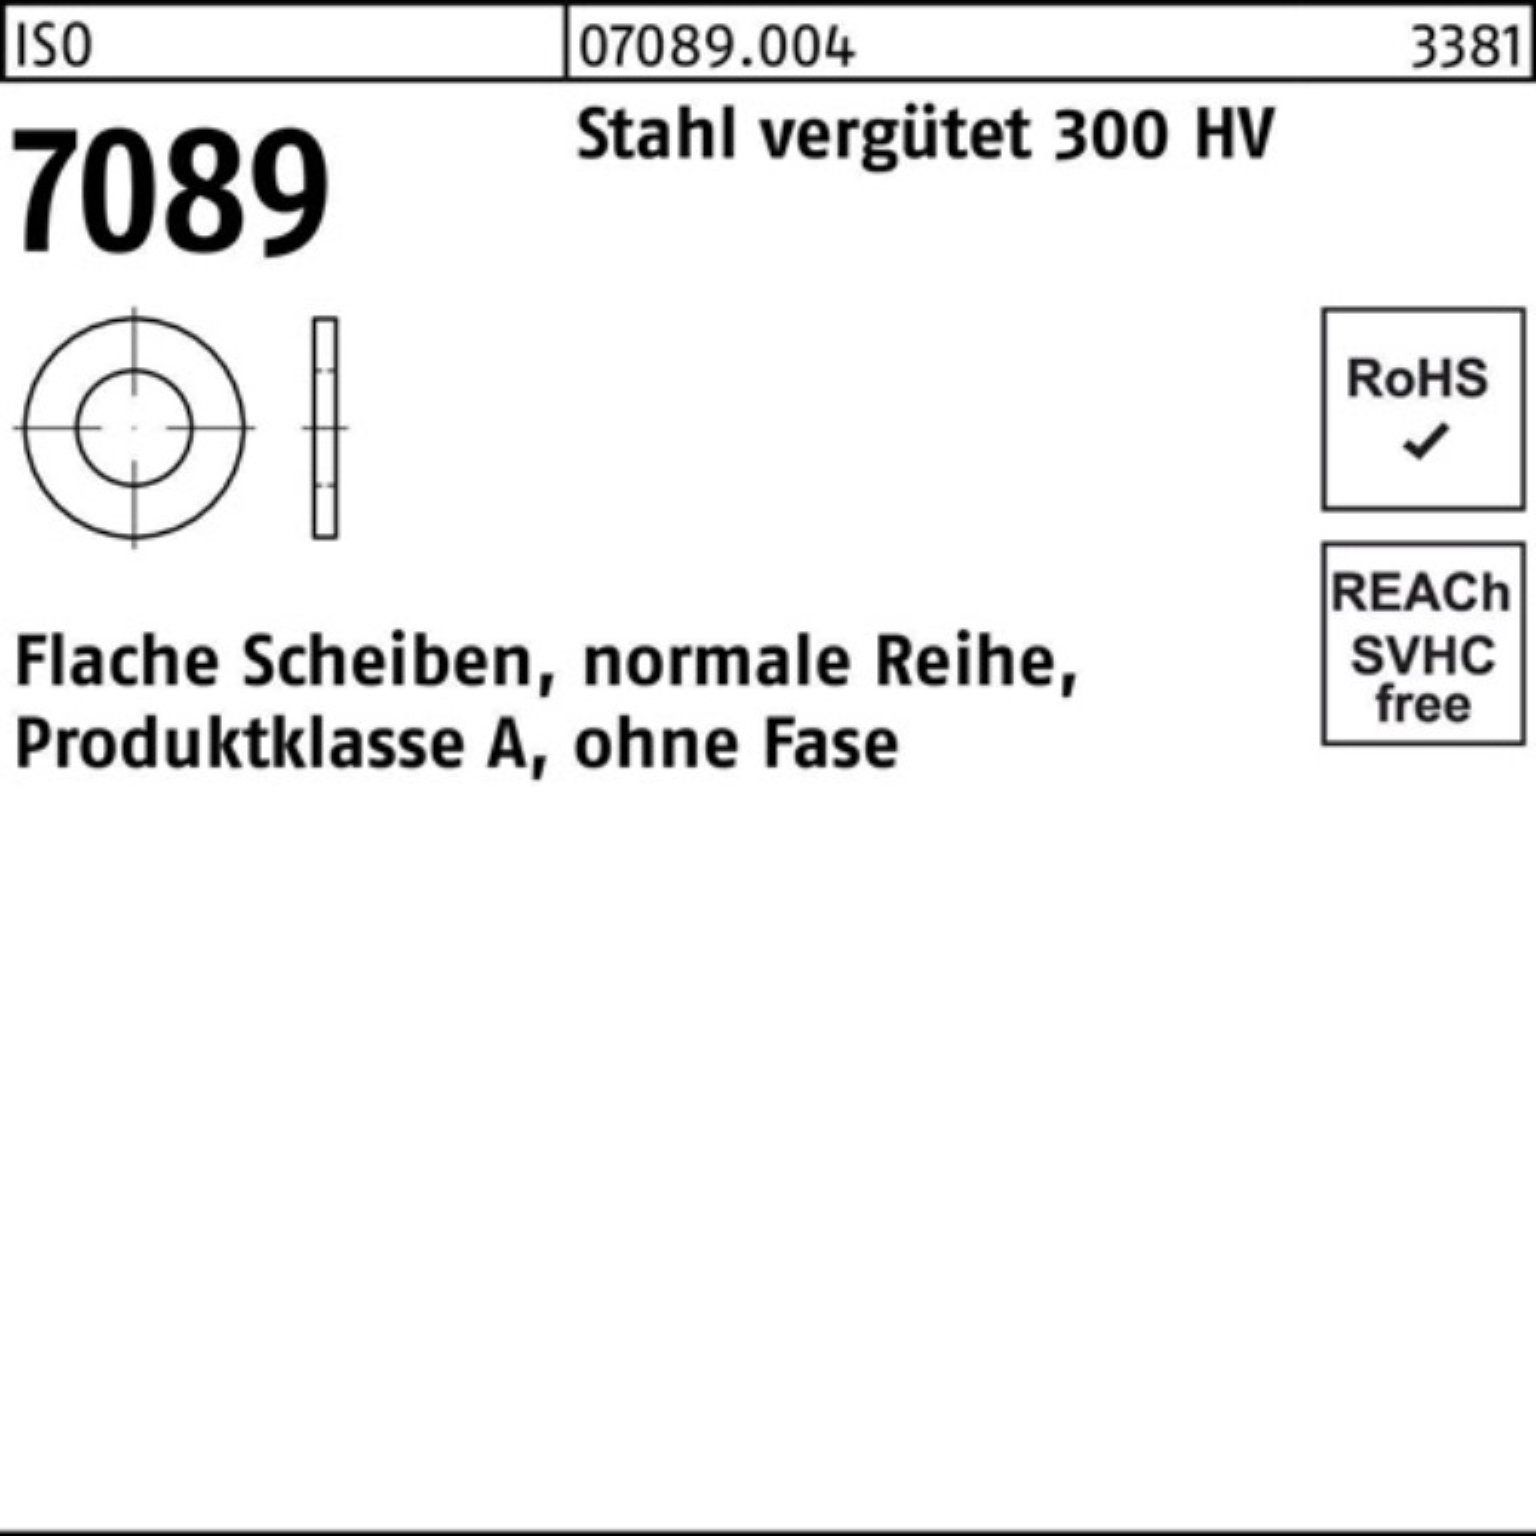 Bufab Unterlegscheibe 100er Pack Unterlegscheibe ISO 7089 o.Fase 10 Stahl vergütet 300 HV 1